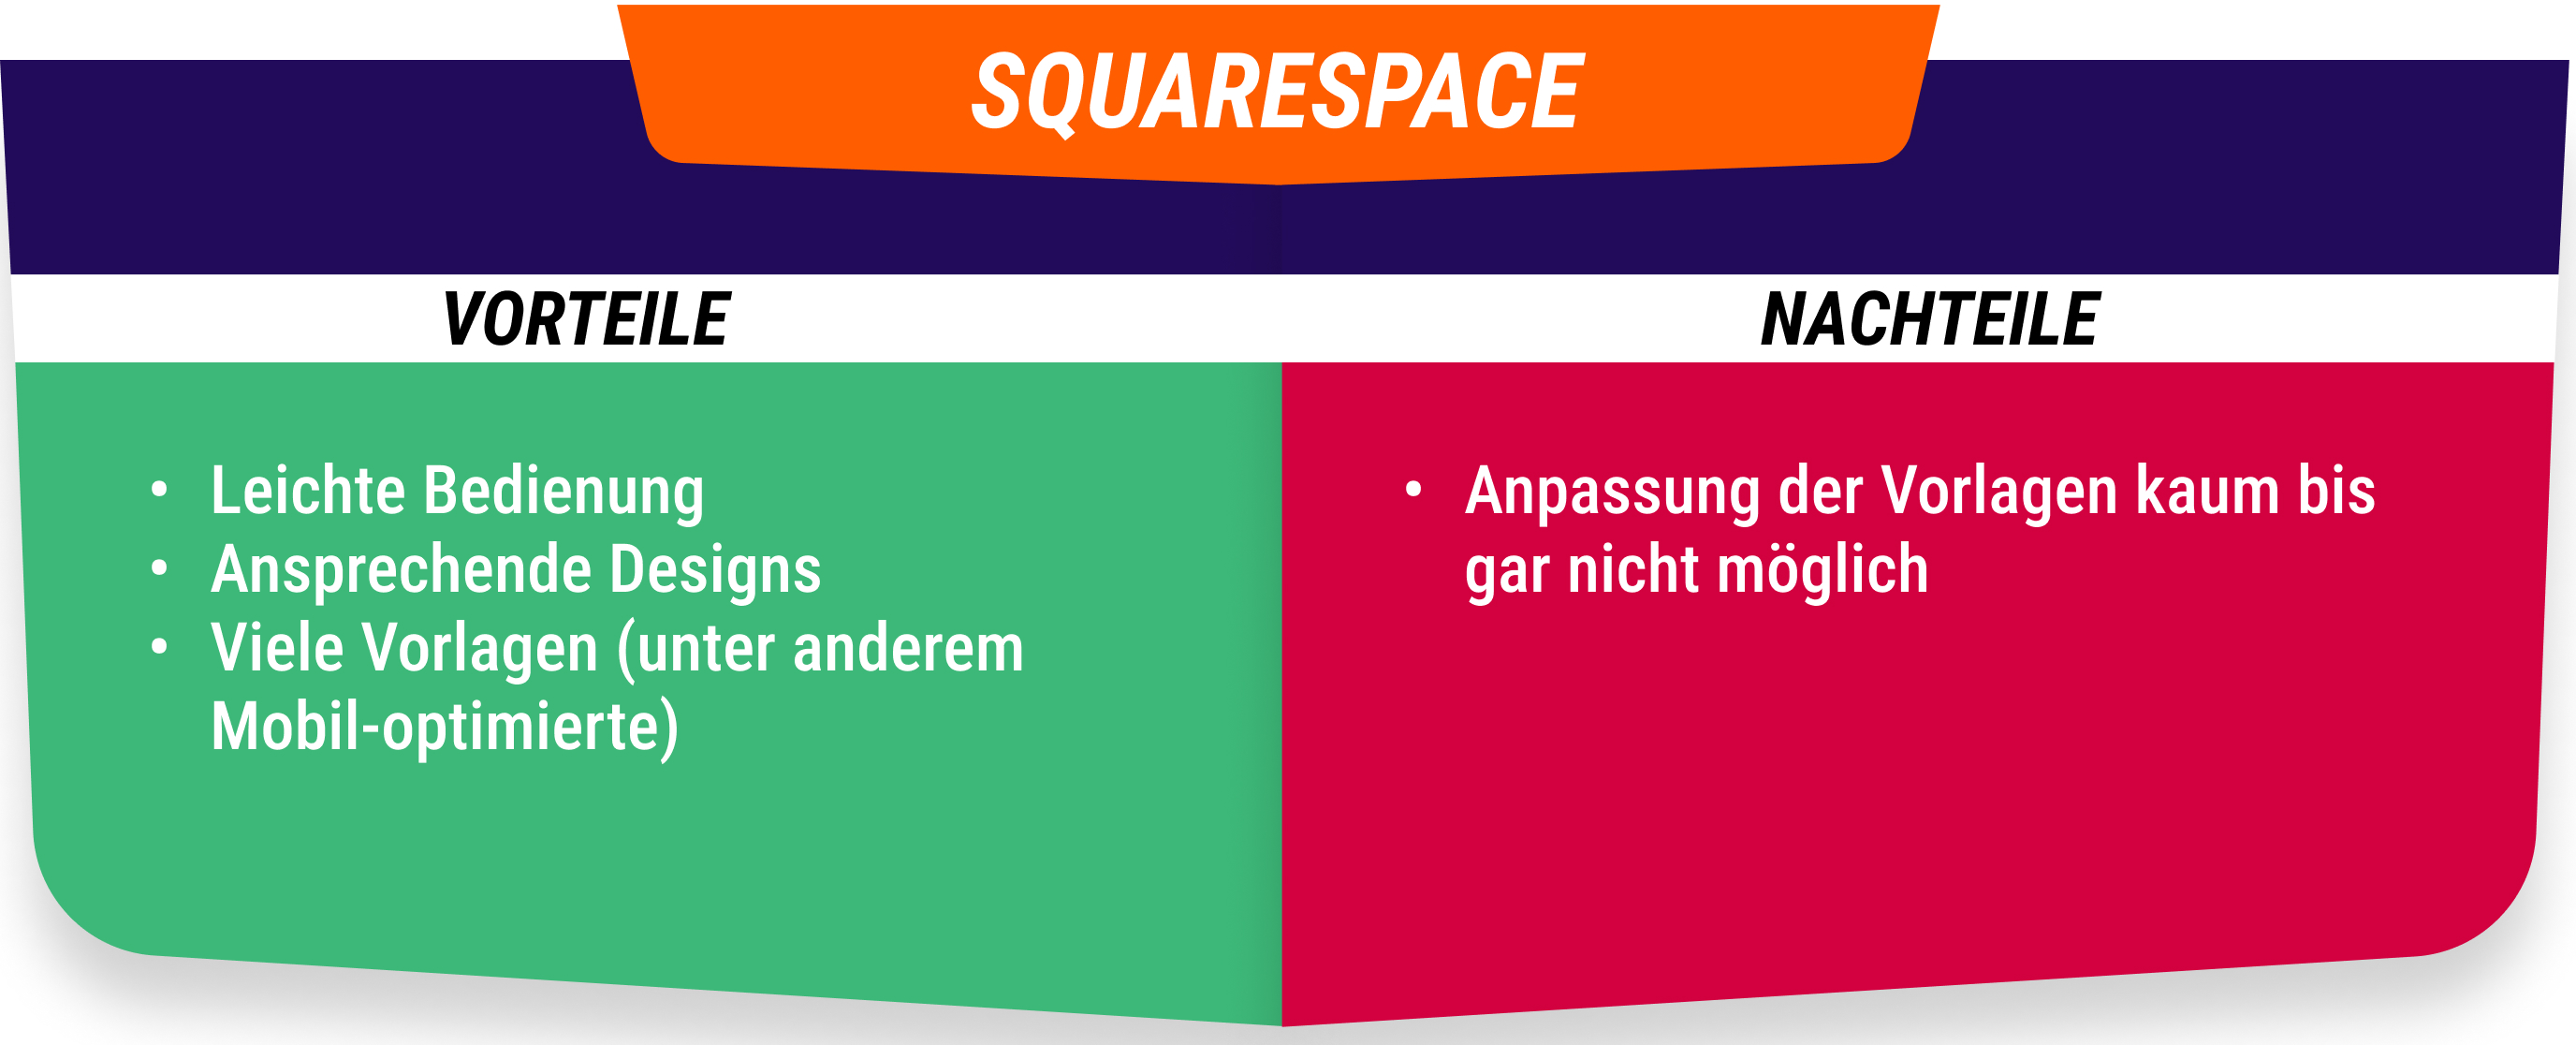 Vorteile und Nachteile von Squarespace